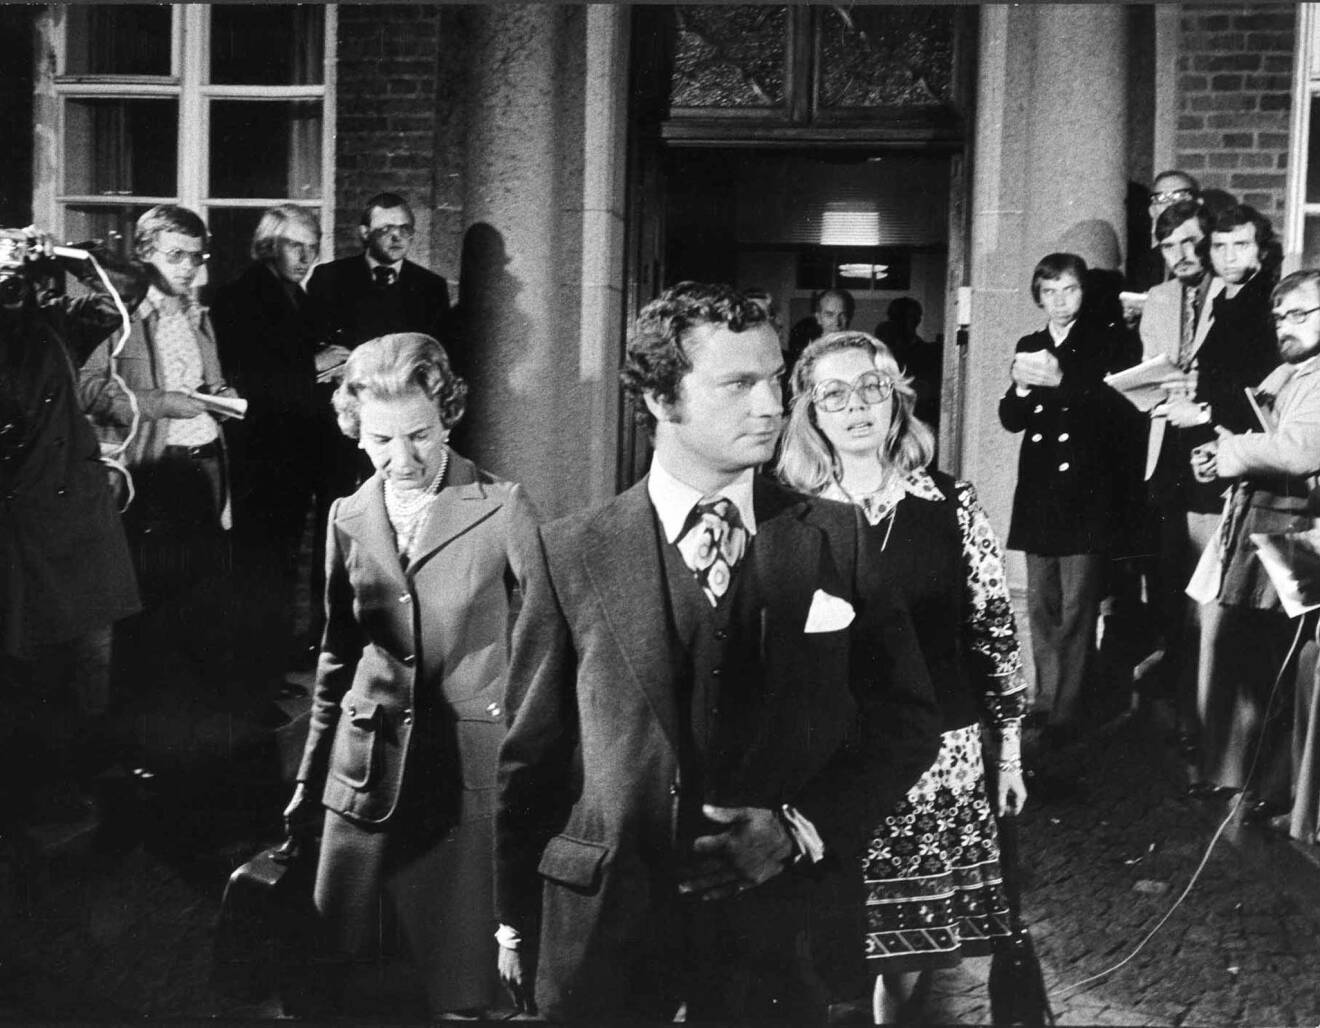 Kungen Drottning Ingrid Prinsessan Christina Helsingborgs lasarett 15 september 1973 Gamle kungen död